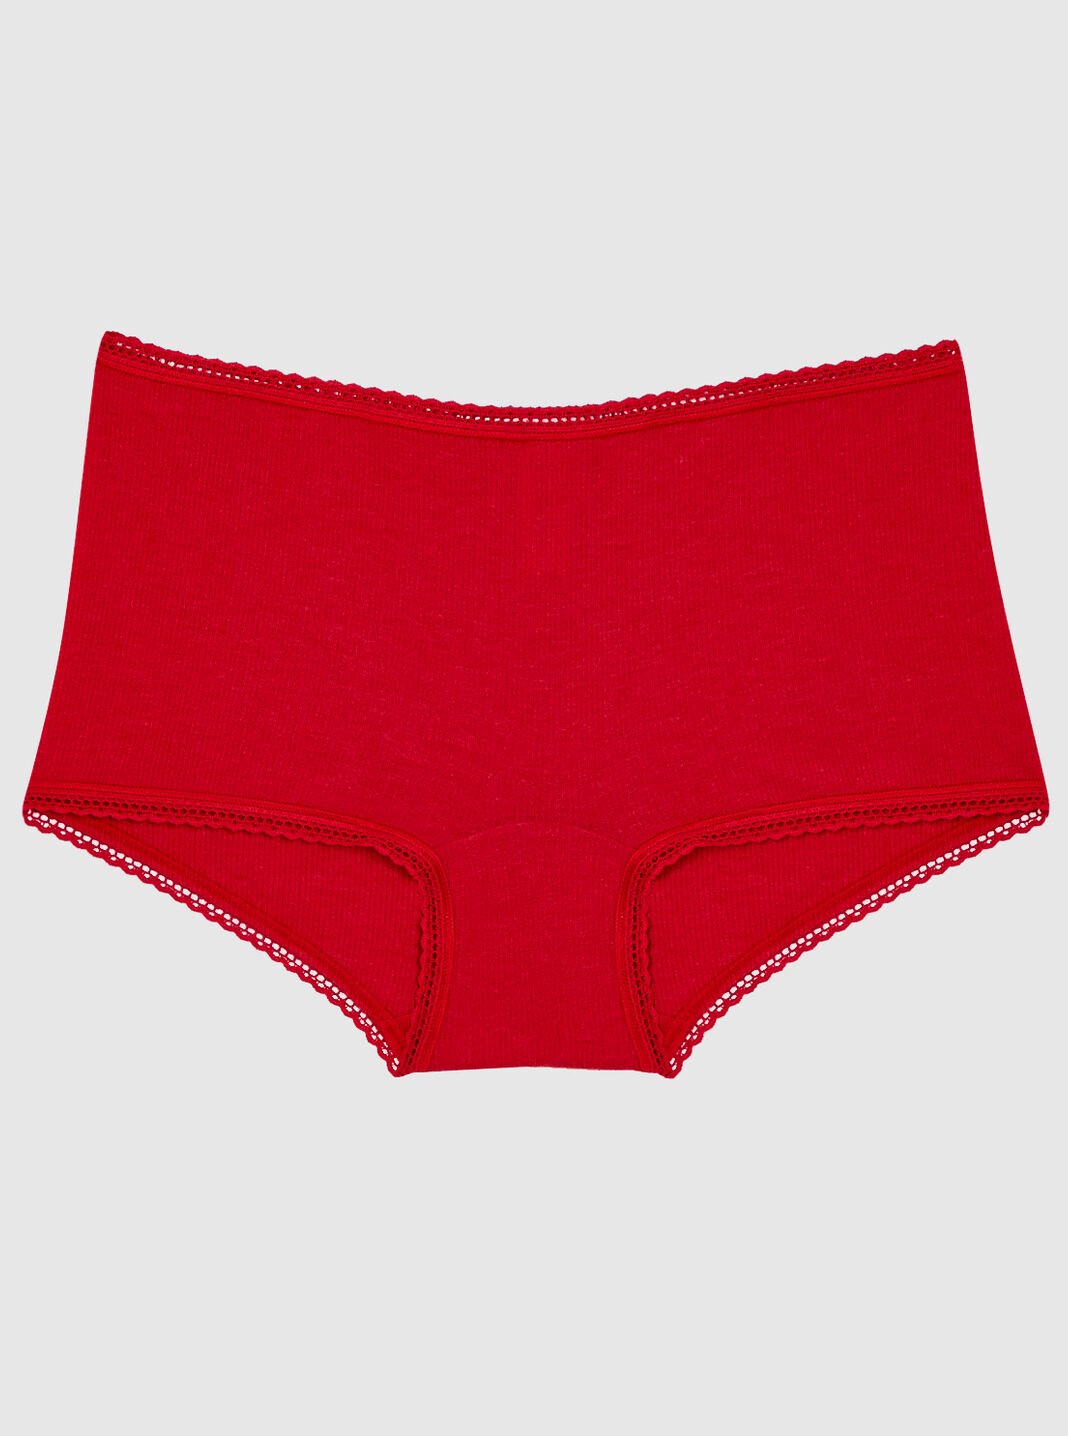 Lelinta Slip Shorts For Women Under Dresses Seamless Anti Chafing Boyshorts  Panties Tummy Control Underwear Bike Shorts : : Clothing, Shoes 